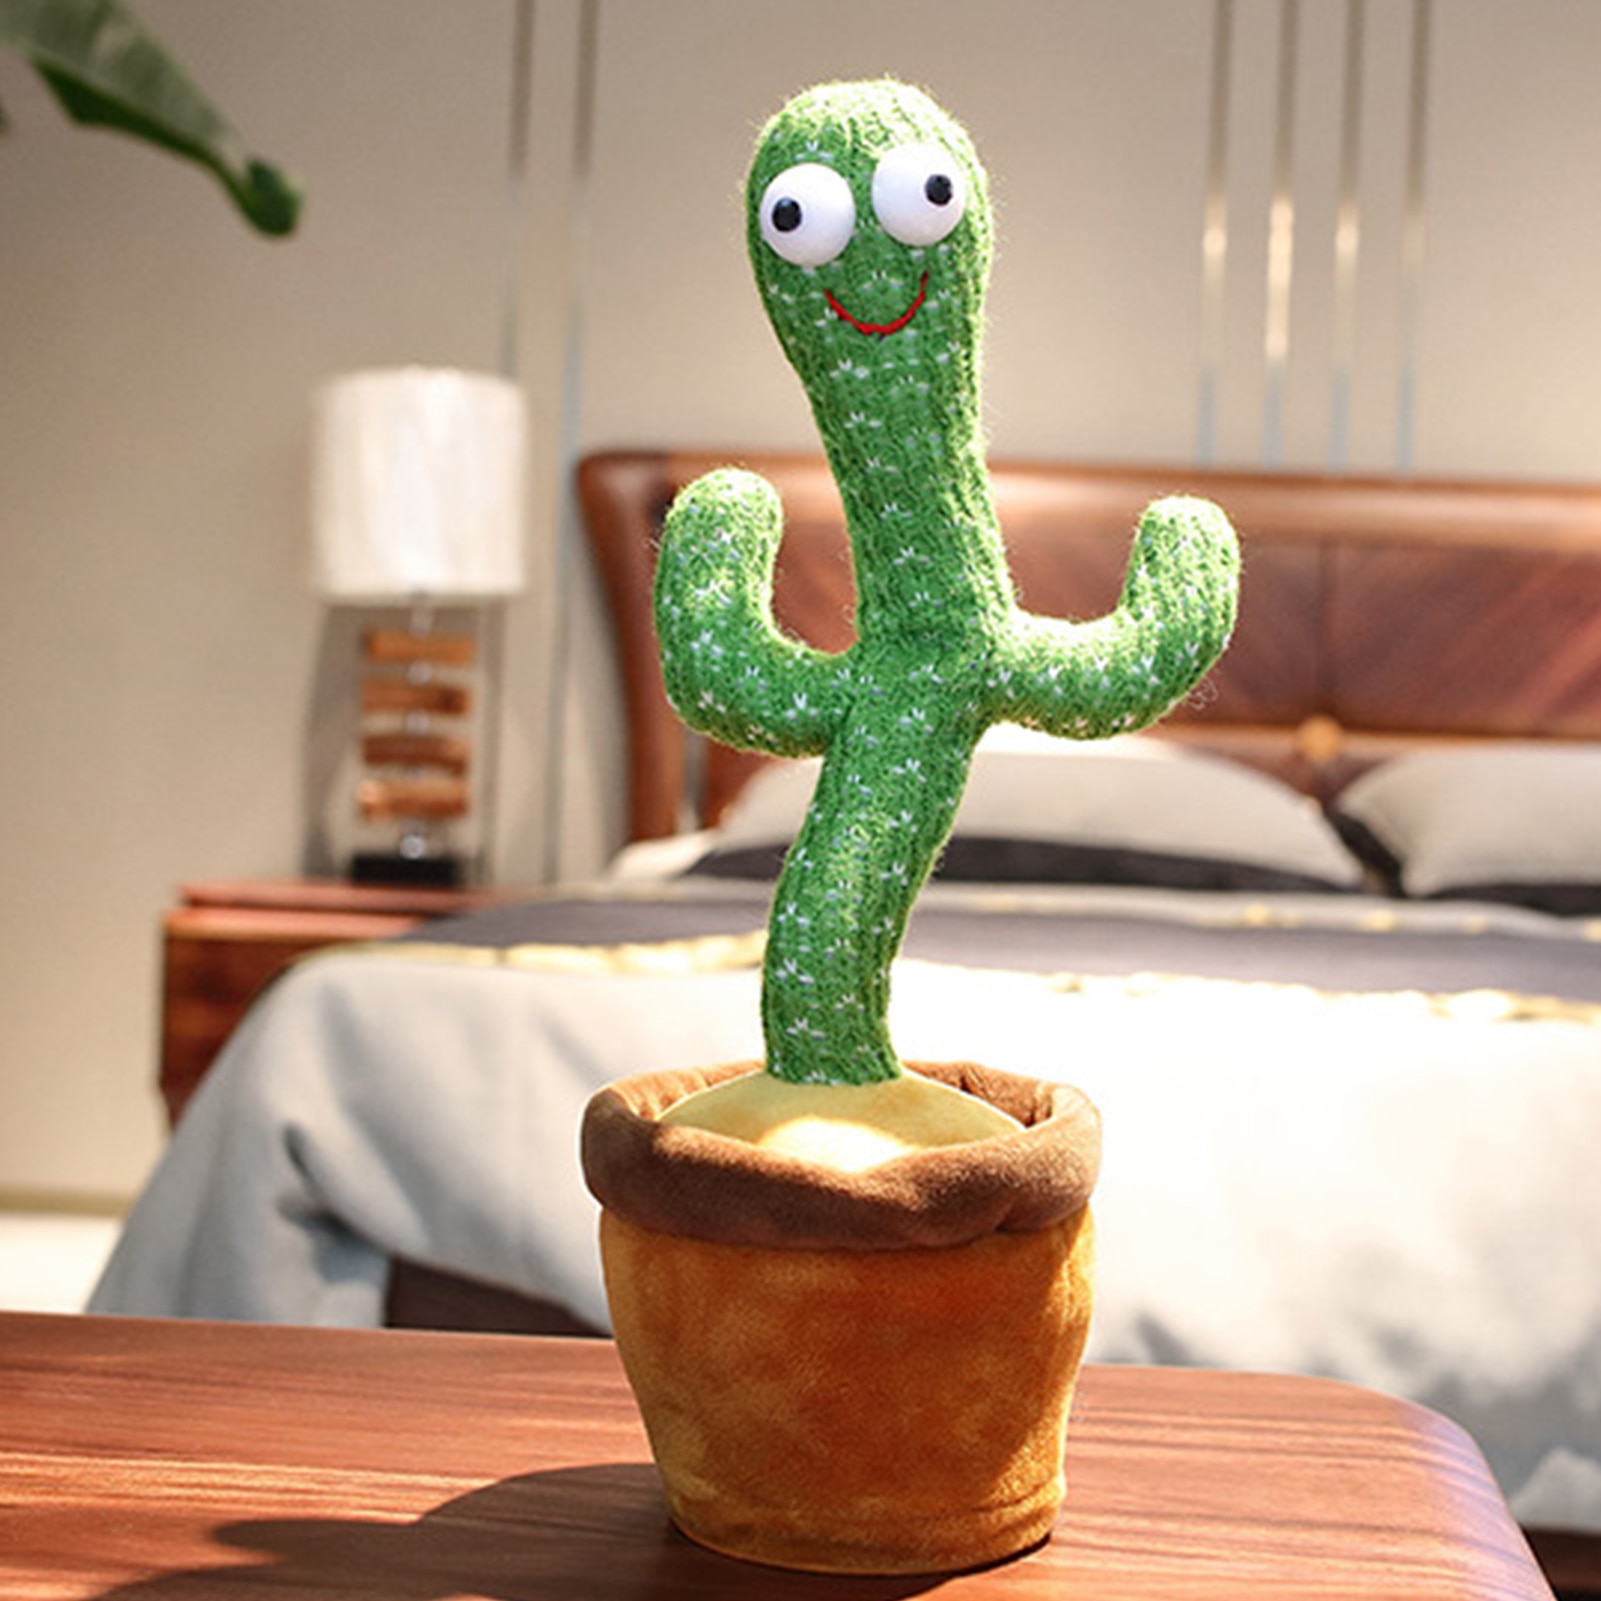 【COD】 dancecactus 'Cactus Đồ chơi sang trọng Đồ chơi điện tử Lắc nhảy Với bài hát Sang trọng Dễ thương Khiêu vũ Cactus Đồ chơi giáo dục mầm non cho trẻ em Phát Ra Âm Thanh Vui Nhộn Cho Bé